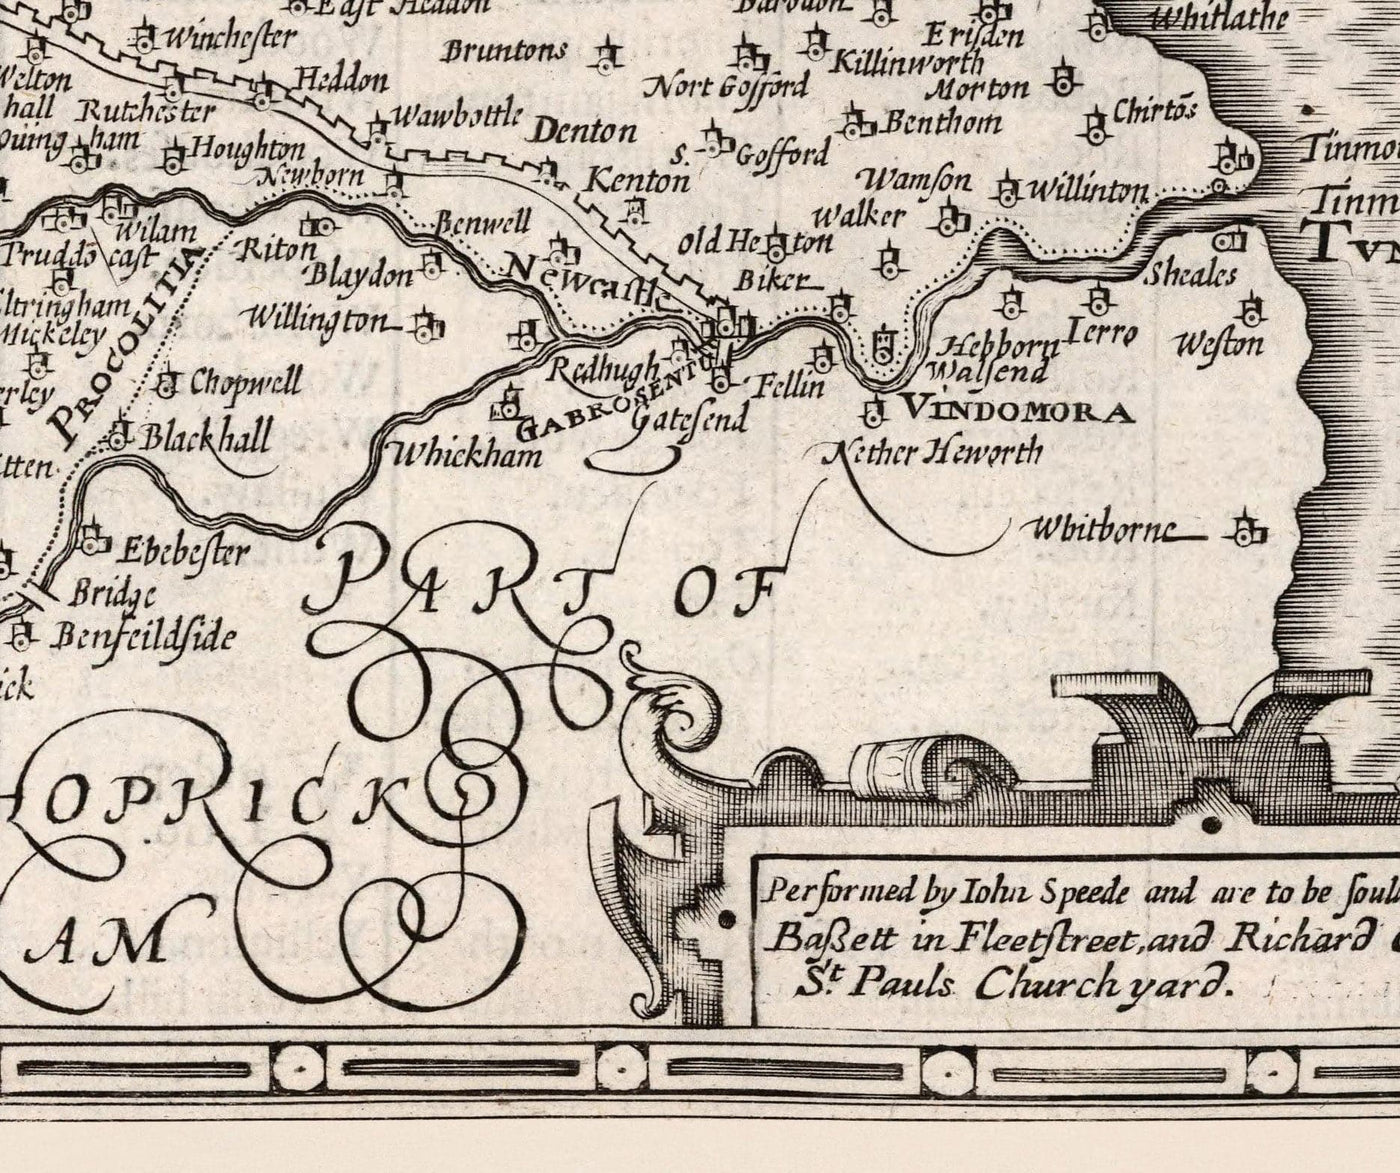 Ancienne carte de Northumberland en 1611 - Newcastle, Gateshead, Mur d'Hadrian, South Shields, Tyne et Wear